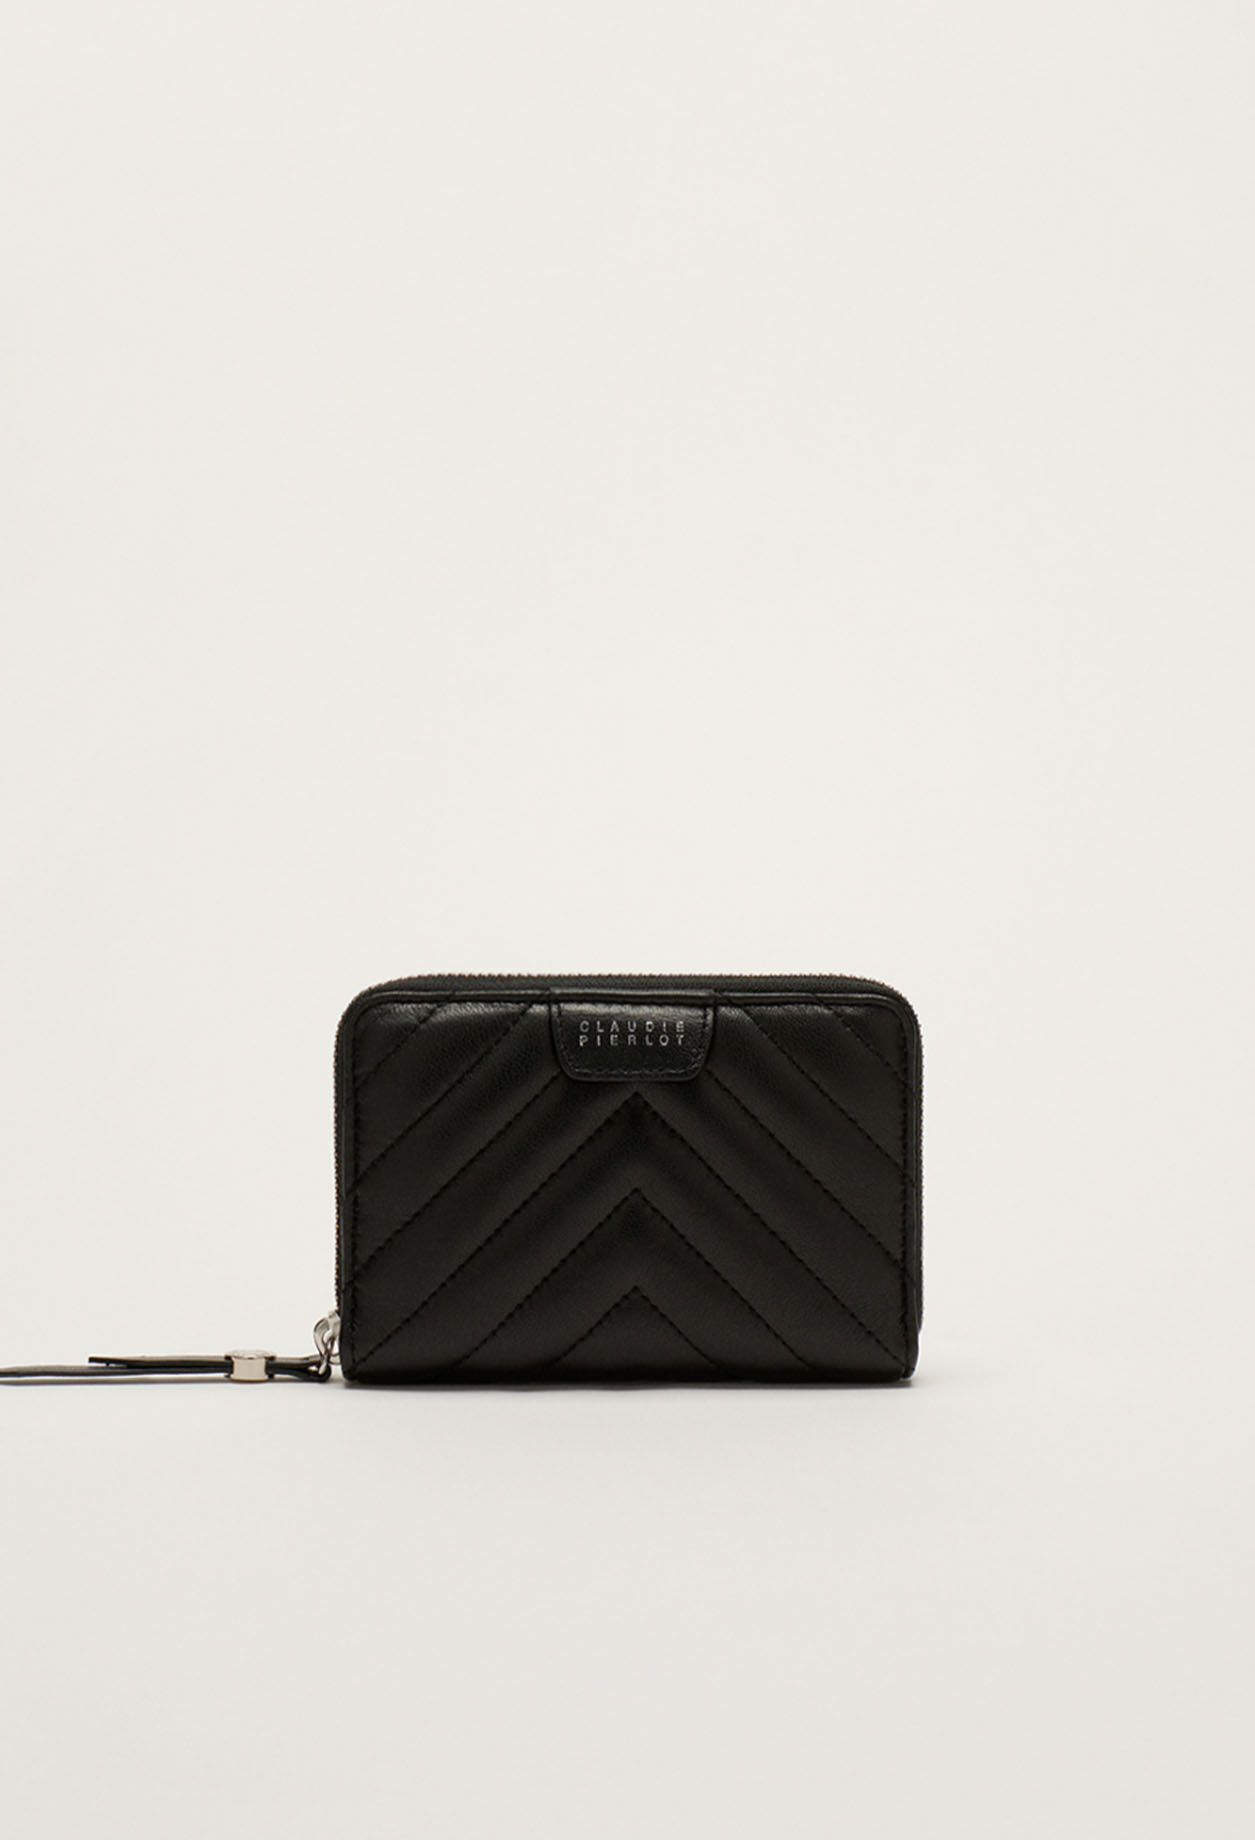 Zipped purse in size TU | Claudie Pierlot